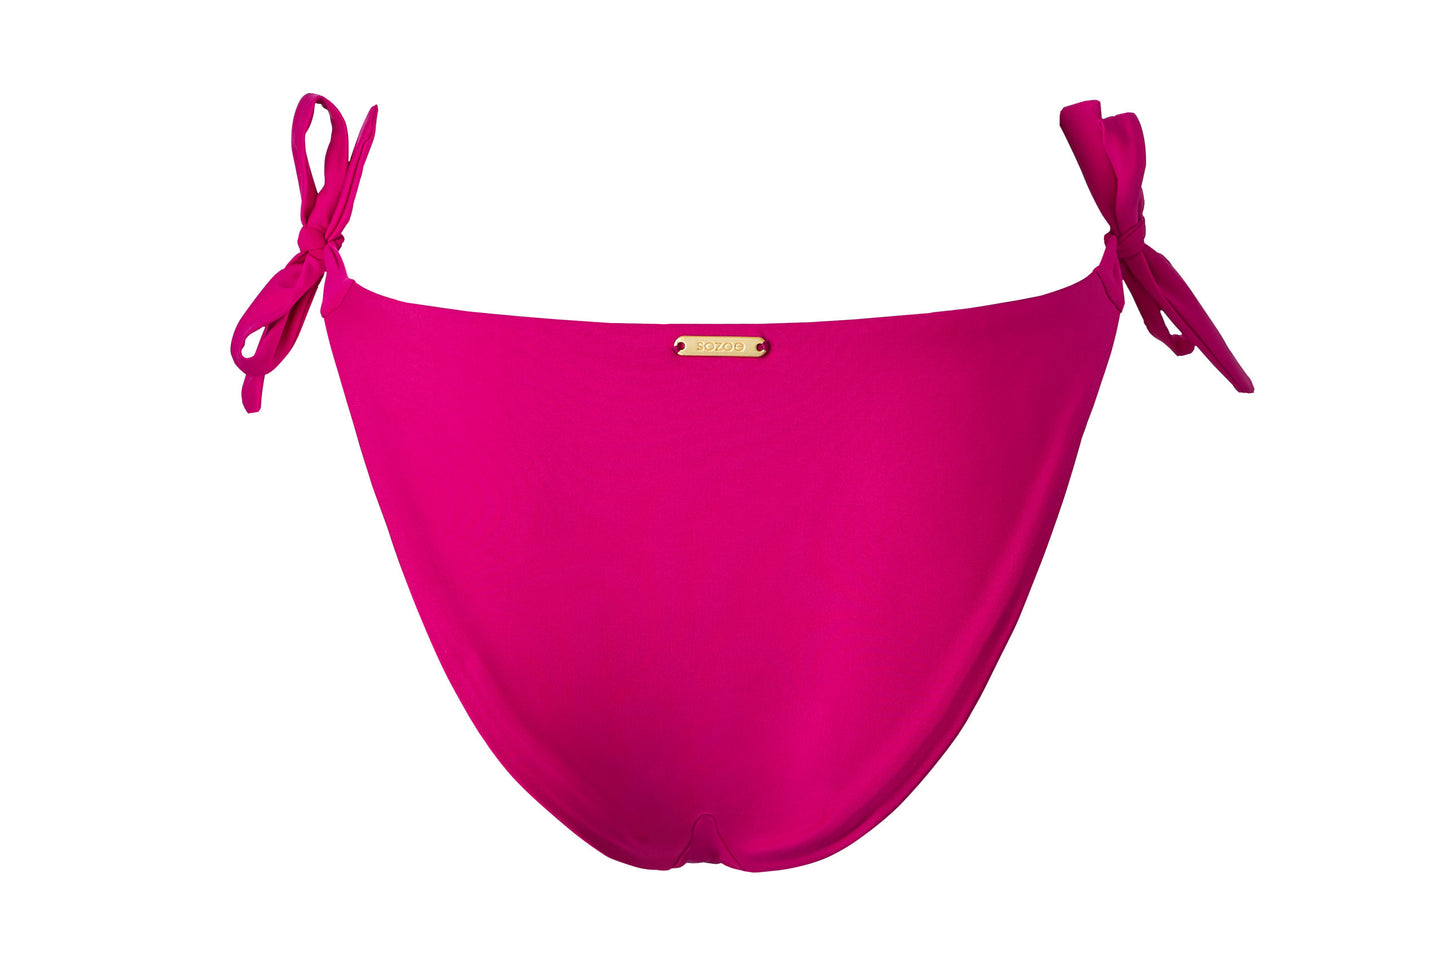 Nachhaltiges Bikinihöschen aus recycelten Materialien in einem wachen pink. Durch die Schleifen an der Seite und den etwas höheren Beinausschnitt wirst Du garantiert zum Blickfang.